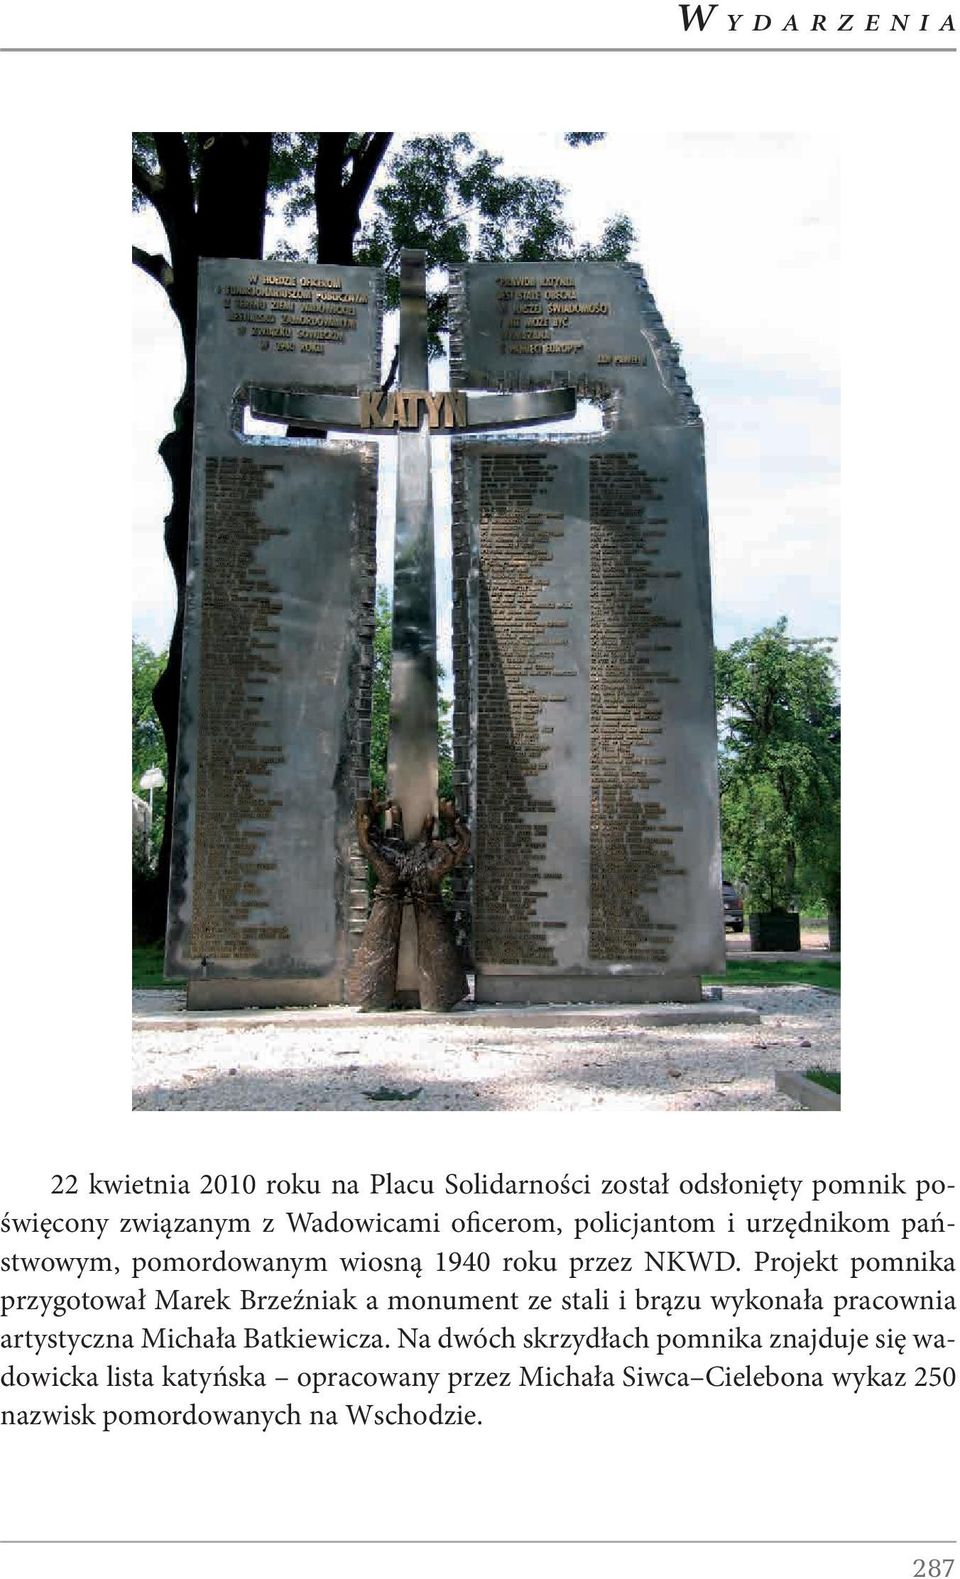 Projekt pomnika przygotował Marek Brzeźniak a monument ze stali i brązu wykonała pracownia artystyczna Michała